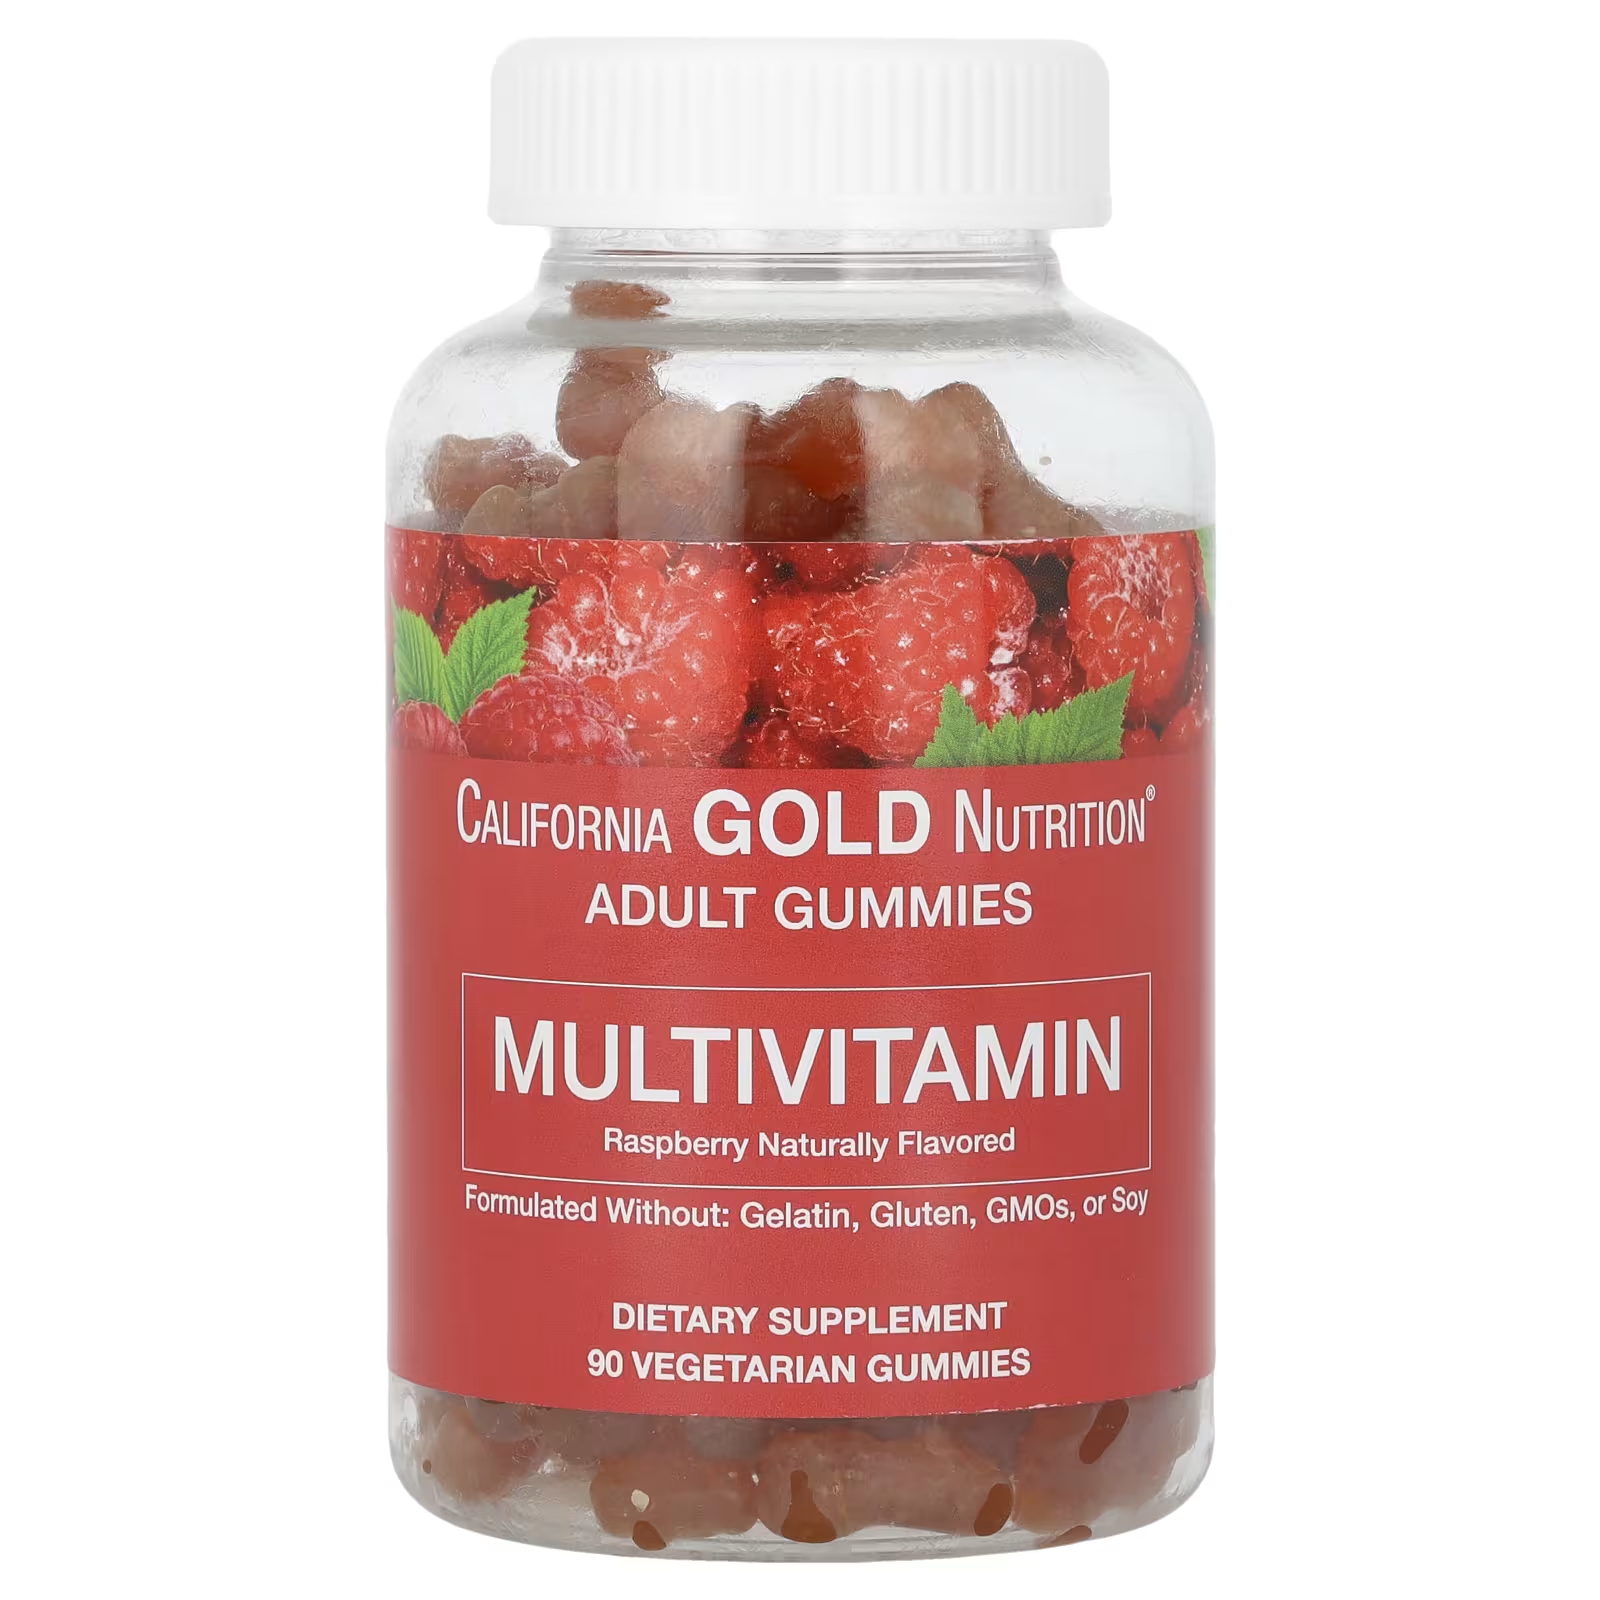 Мультивитаминные жевательные конфеты для взрослых с натуральным вкусом малины, 90 вегетарианских жевательных конфет California Gold Nutrition california gold nutrition мультивитамины для ежедневного приема 60 растительных капсул